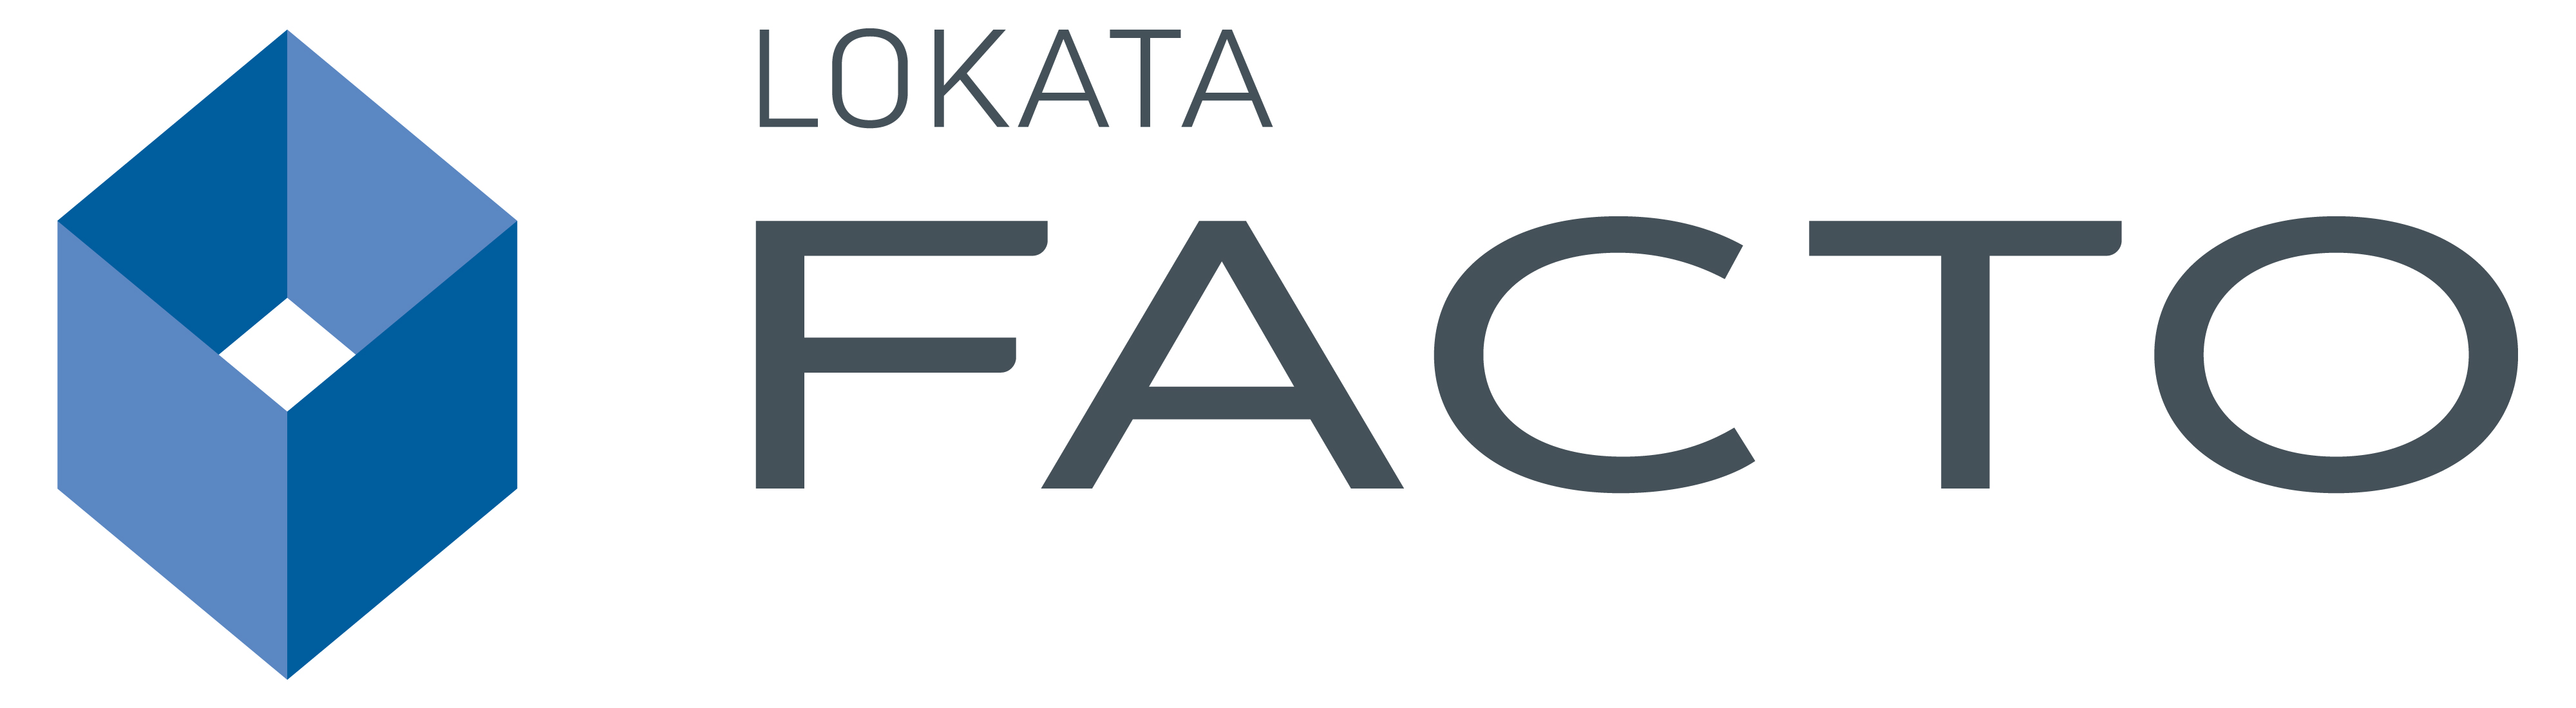 Facto-Lokata Facto